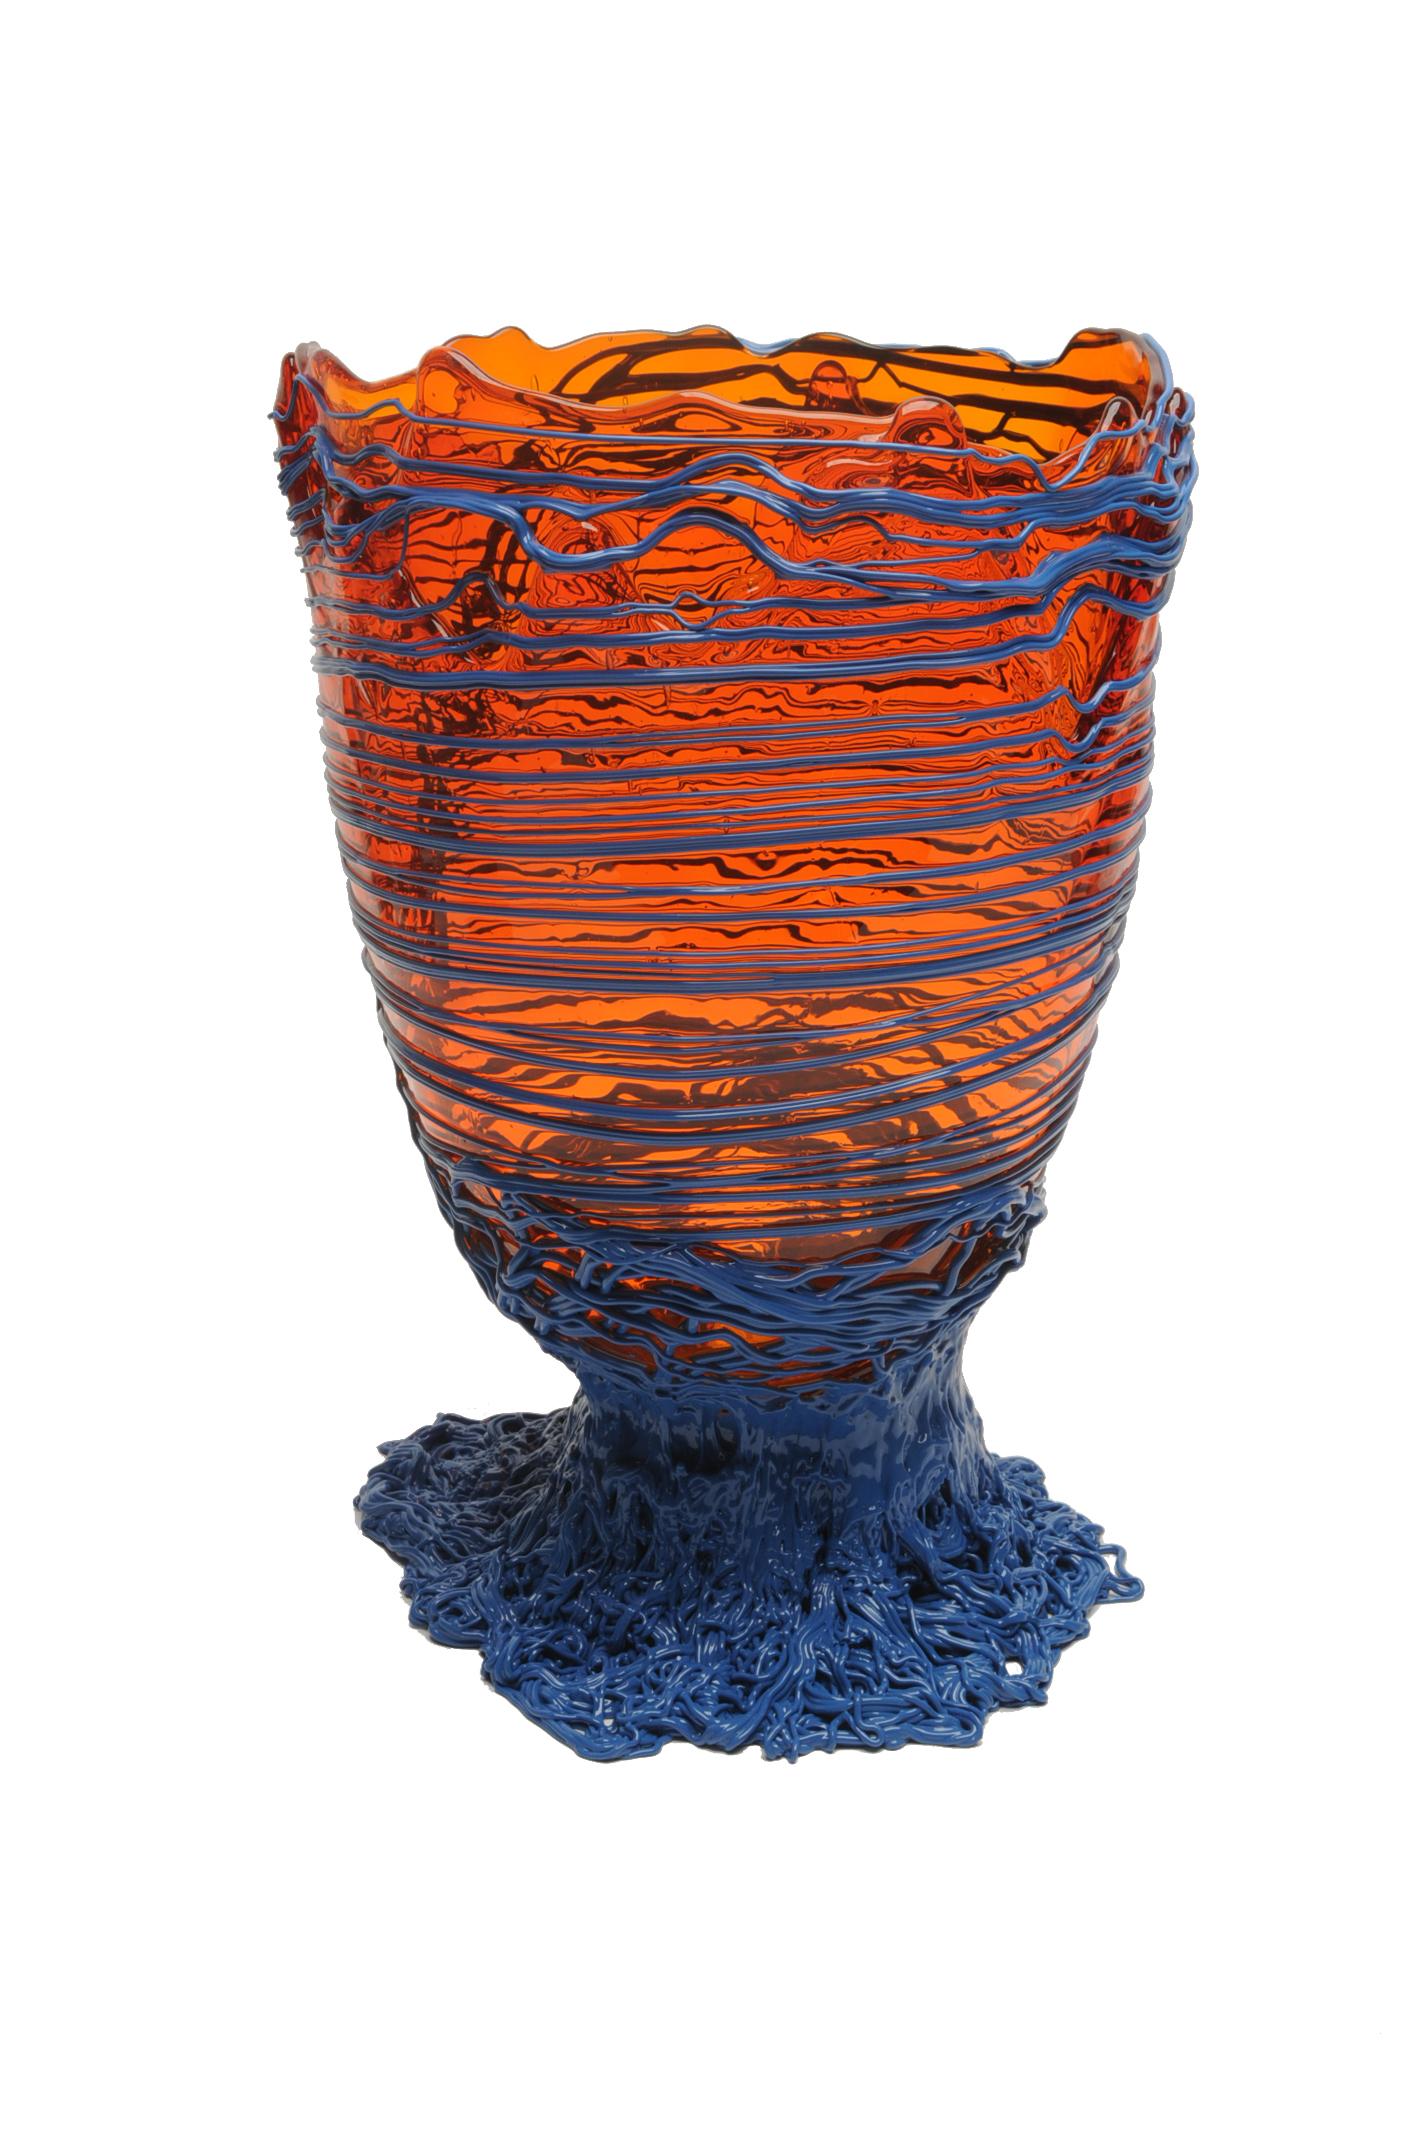 Vase spaghetti, orange clair, lavande foncé mat.

Vase en résine souple conçu par Gaetano Pesce en 1995 pour la collection Fish Design.

Mesures : XL - ø 30cm x H 56cm.

Autres tailles disponibles.

Couleurs : orange clair, lavande foncé